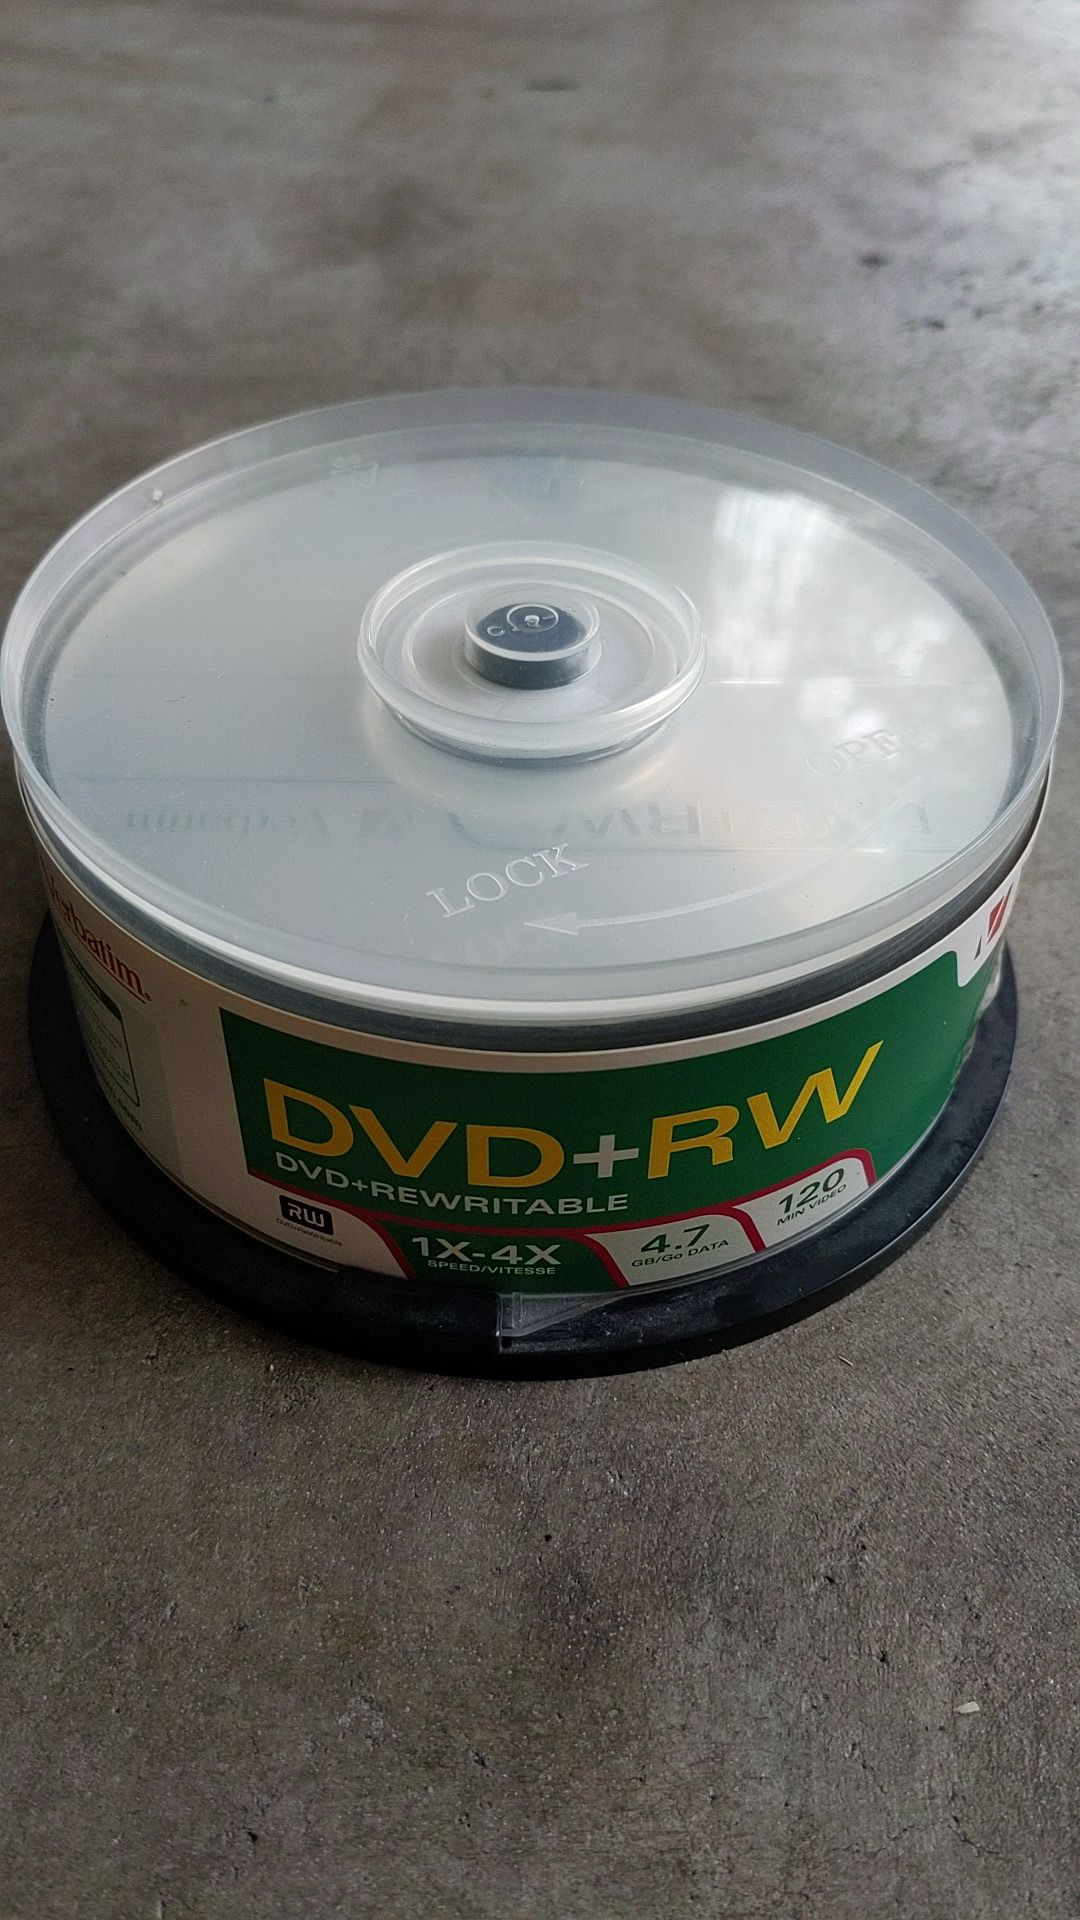 29 DVD+RW